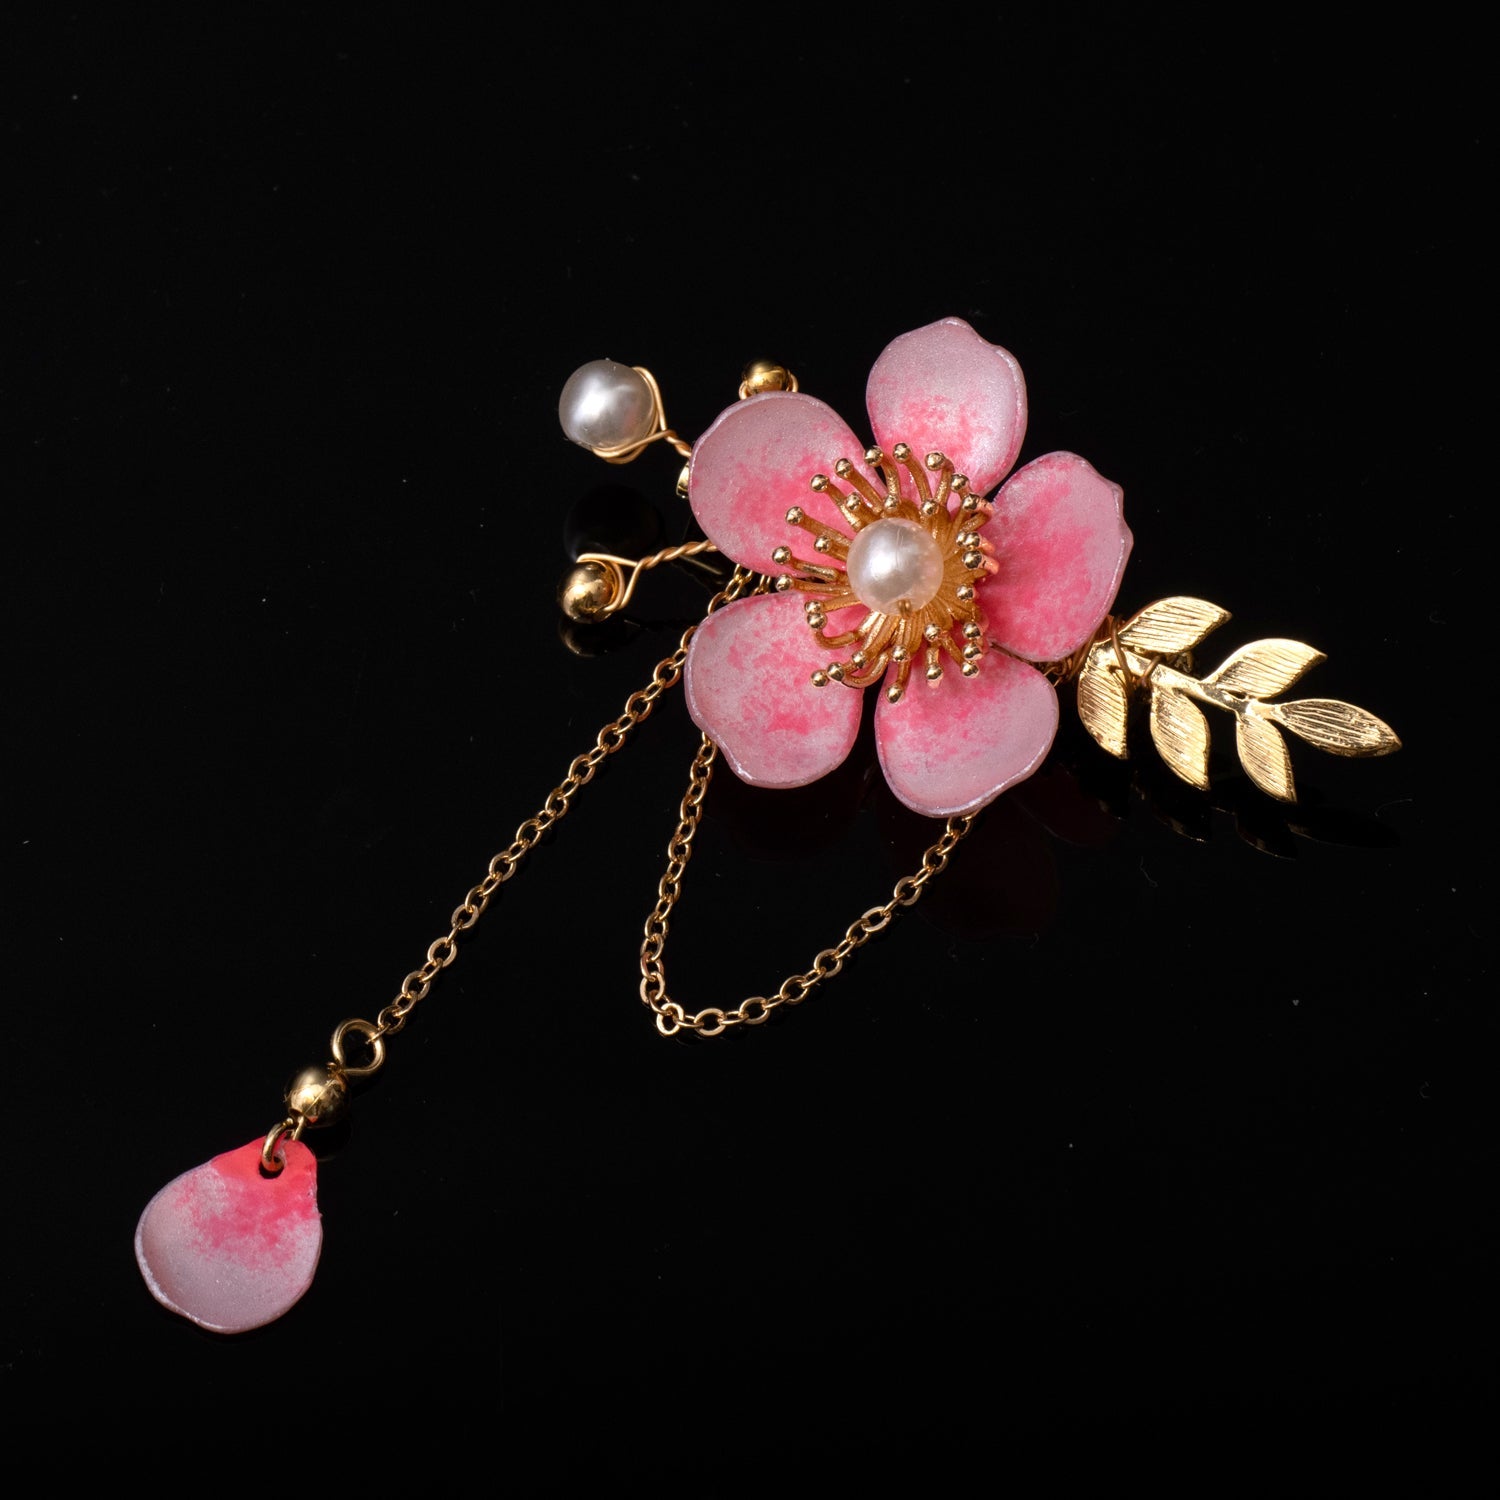 Kirschblüten-Sakura-Blütenblatt-Brosche - Cherry Blossom Sakura Petal Brooch-2